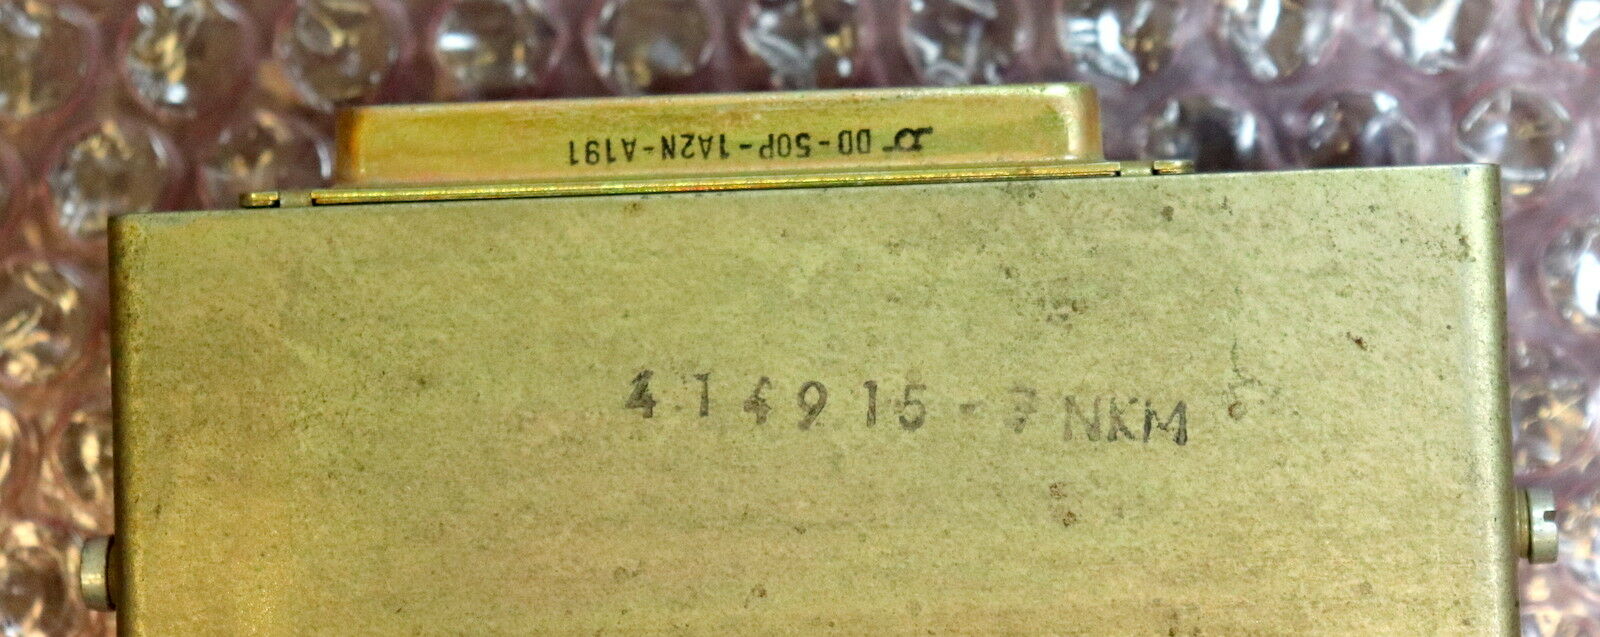 RFT NUMERIK DDR Adapter 414915-7 NKM gebraucht